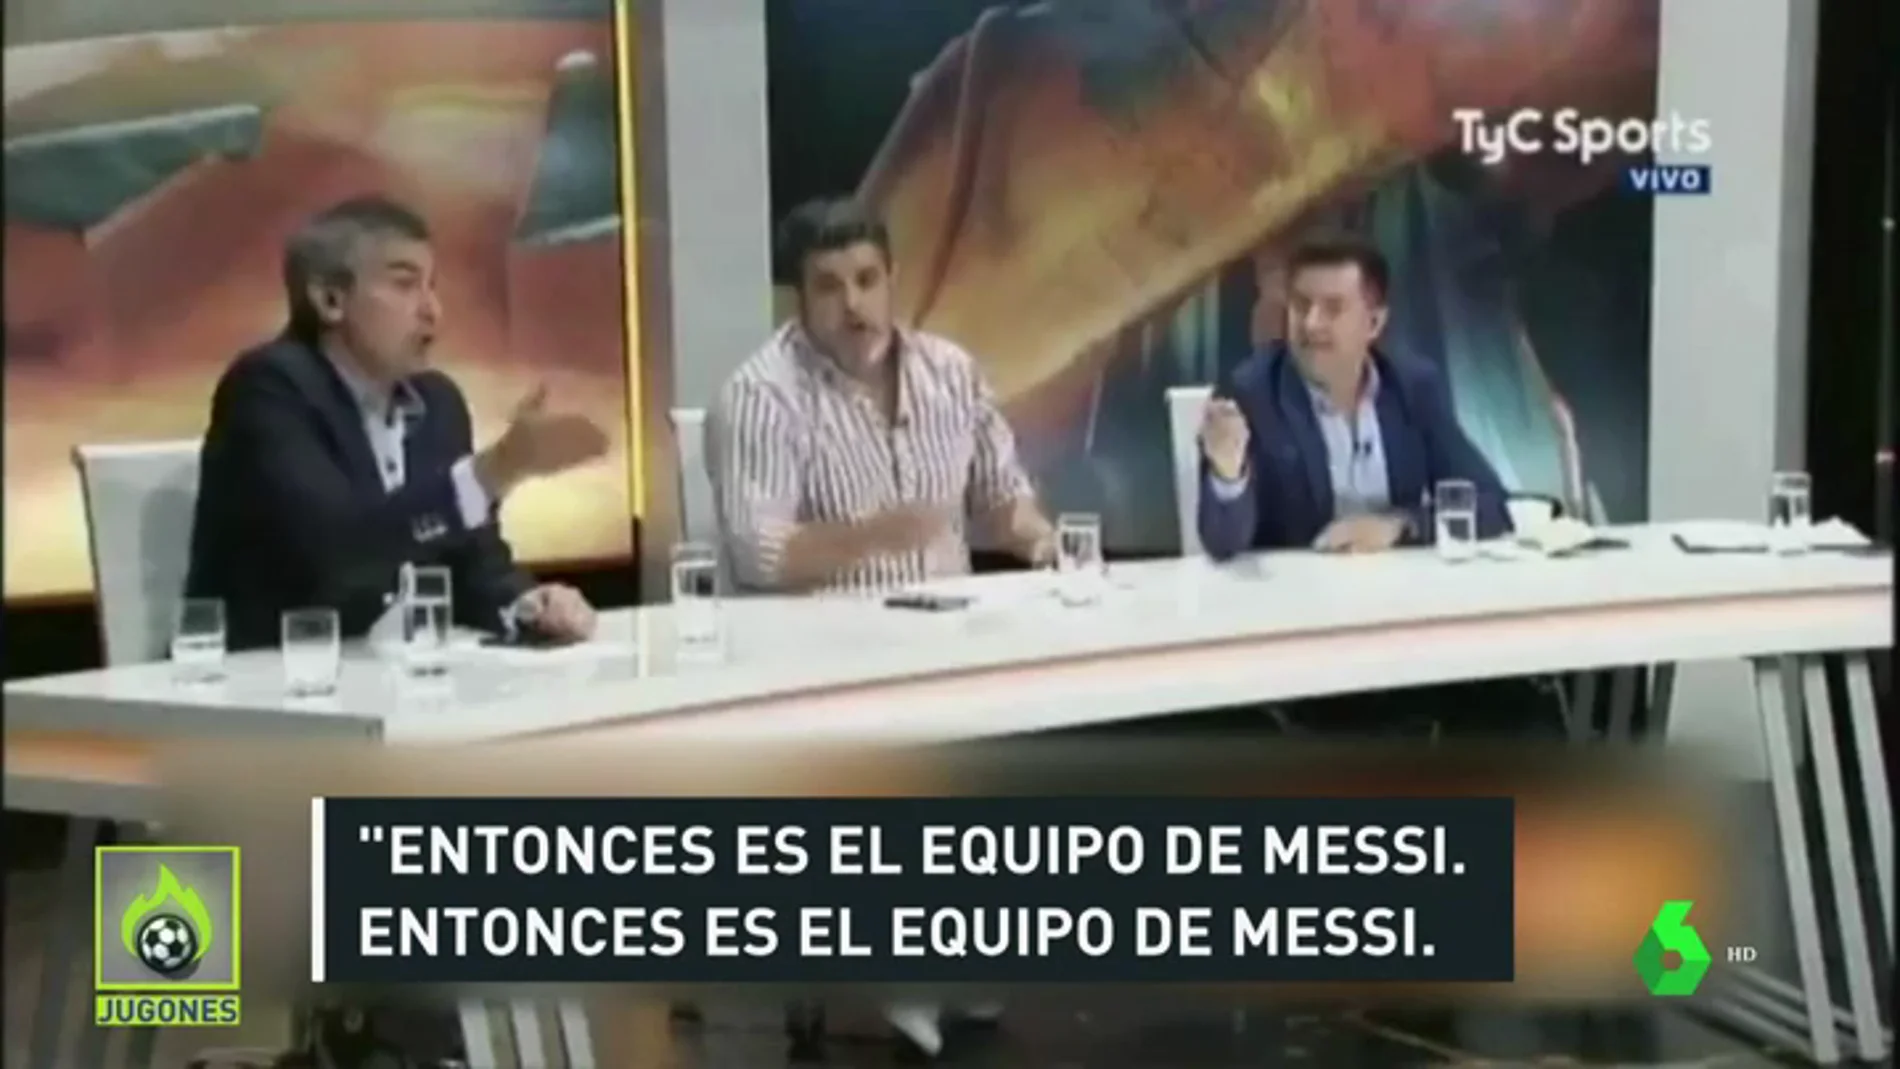 Otra vez críticas hacia Messi por una frase de Sampaoli: "Vuelven todos los jugadores que se llevan bien con Messi"